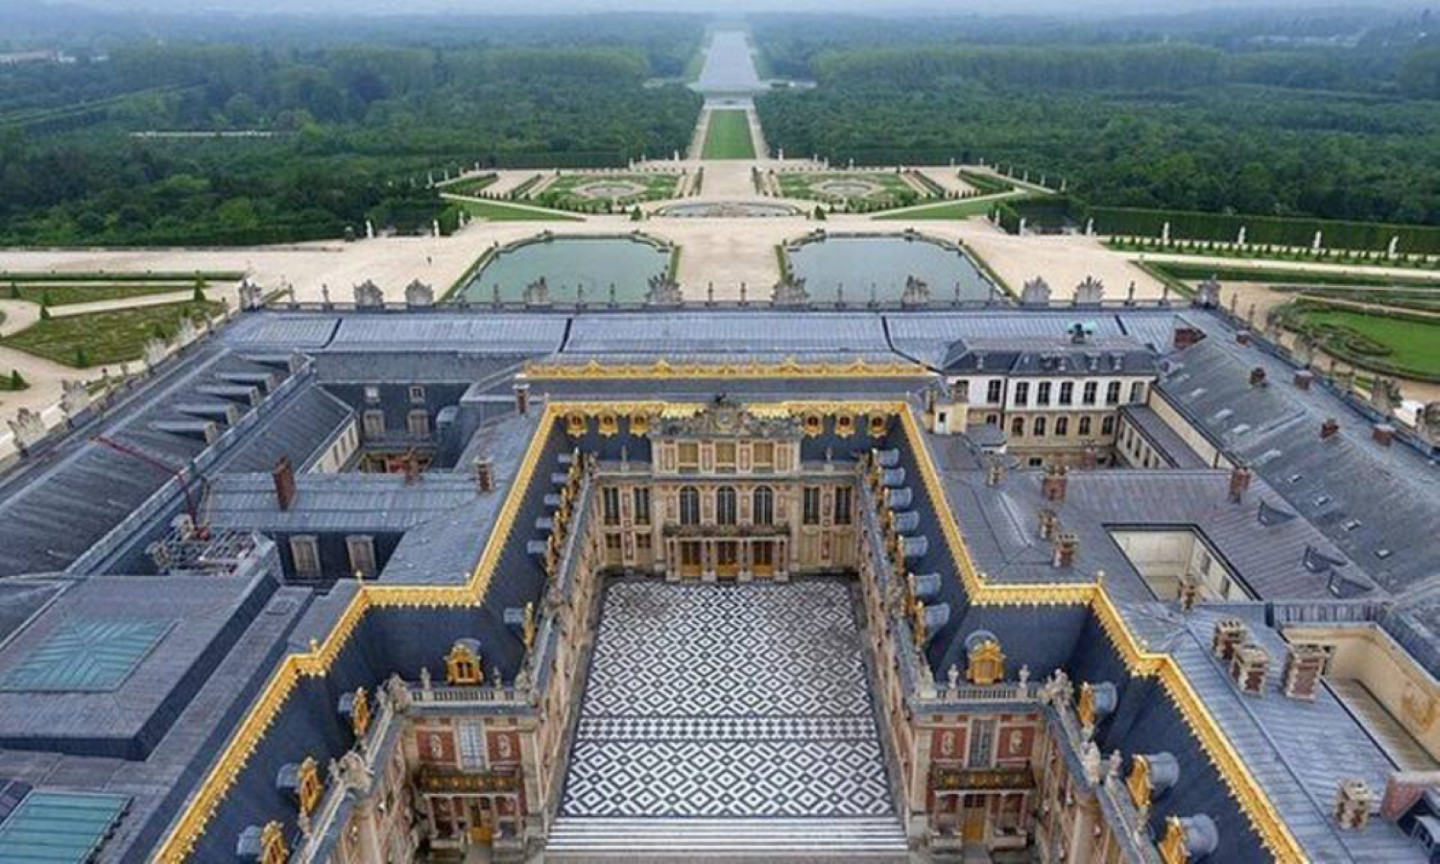 Hôte GreenGo: La Frémille - Nid arty, traquille et nature à deux pas du Château de Versailles - Paris - Image 36